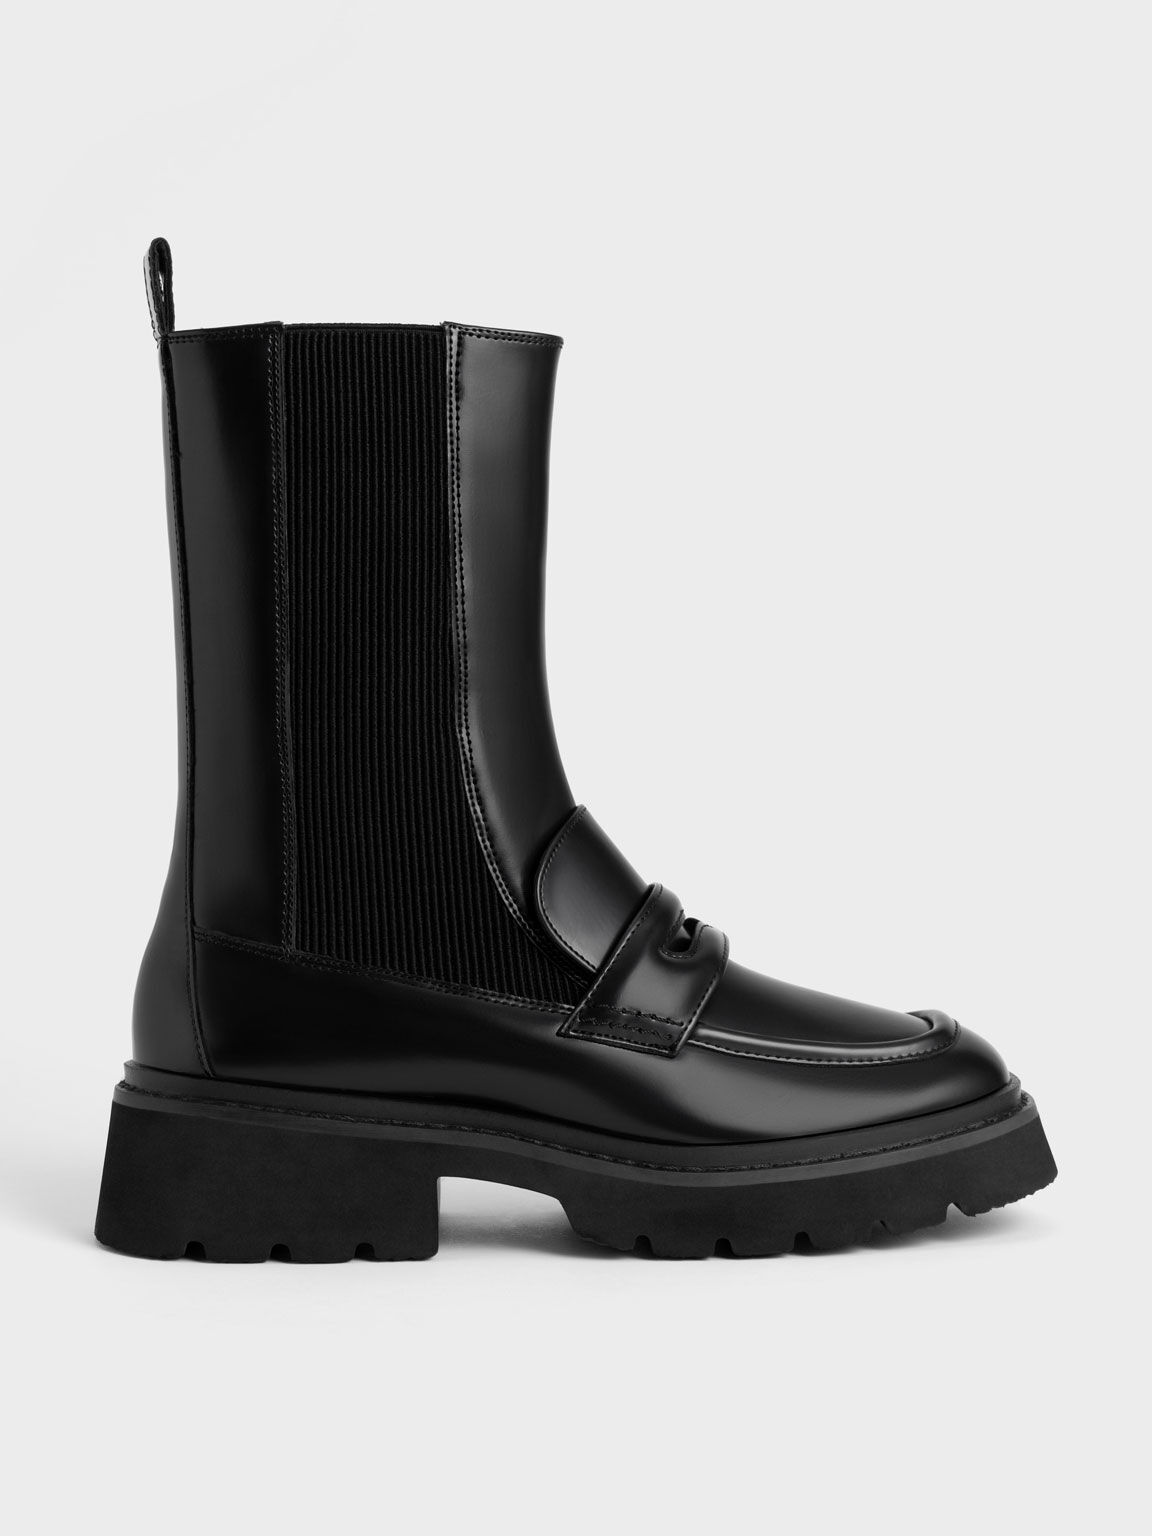 Penny Loafer Chelsea Boots, Black, hi-res